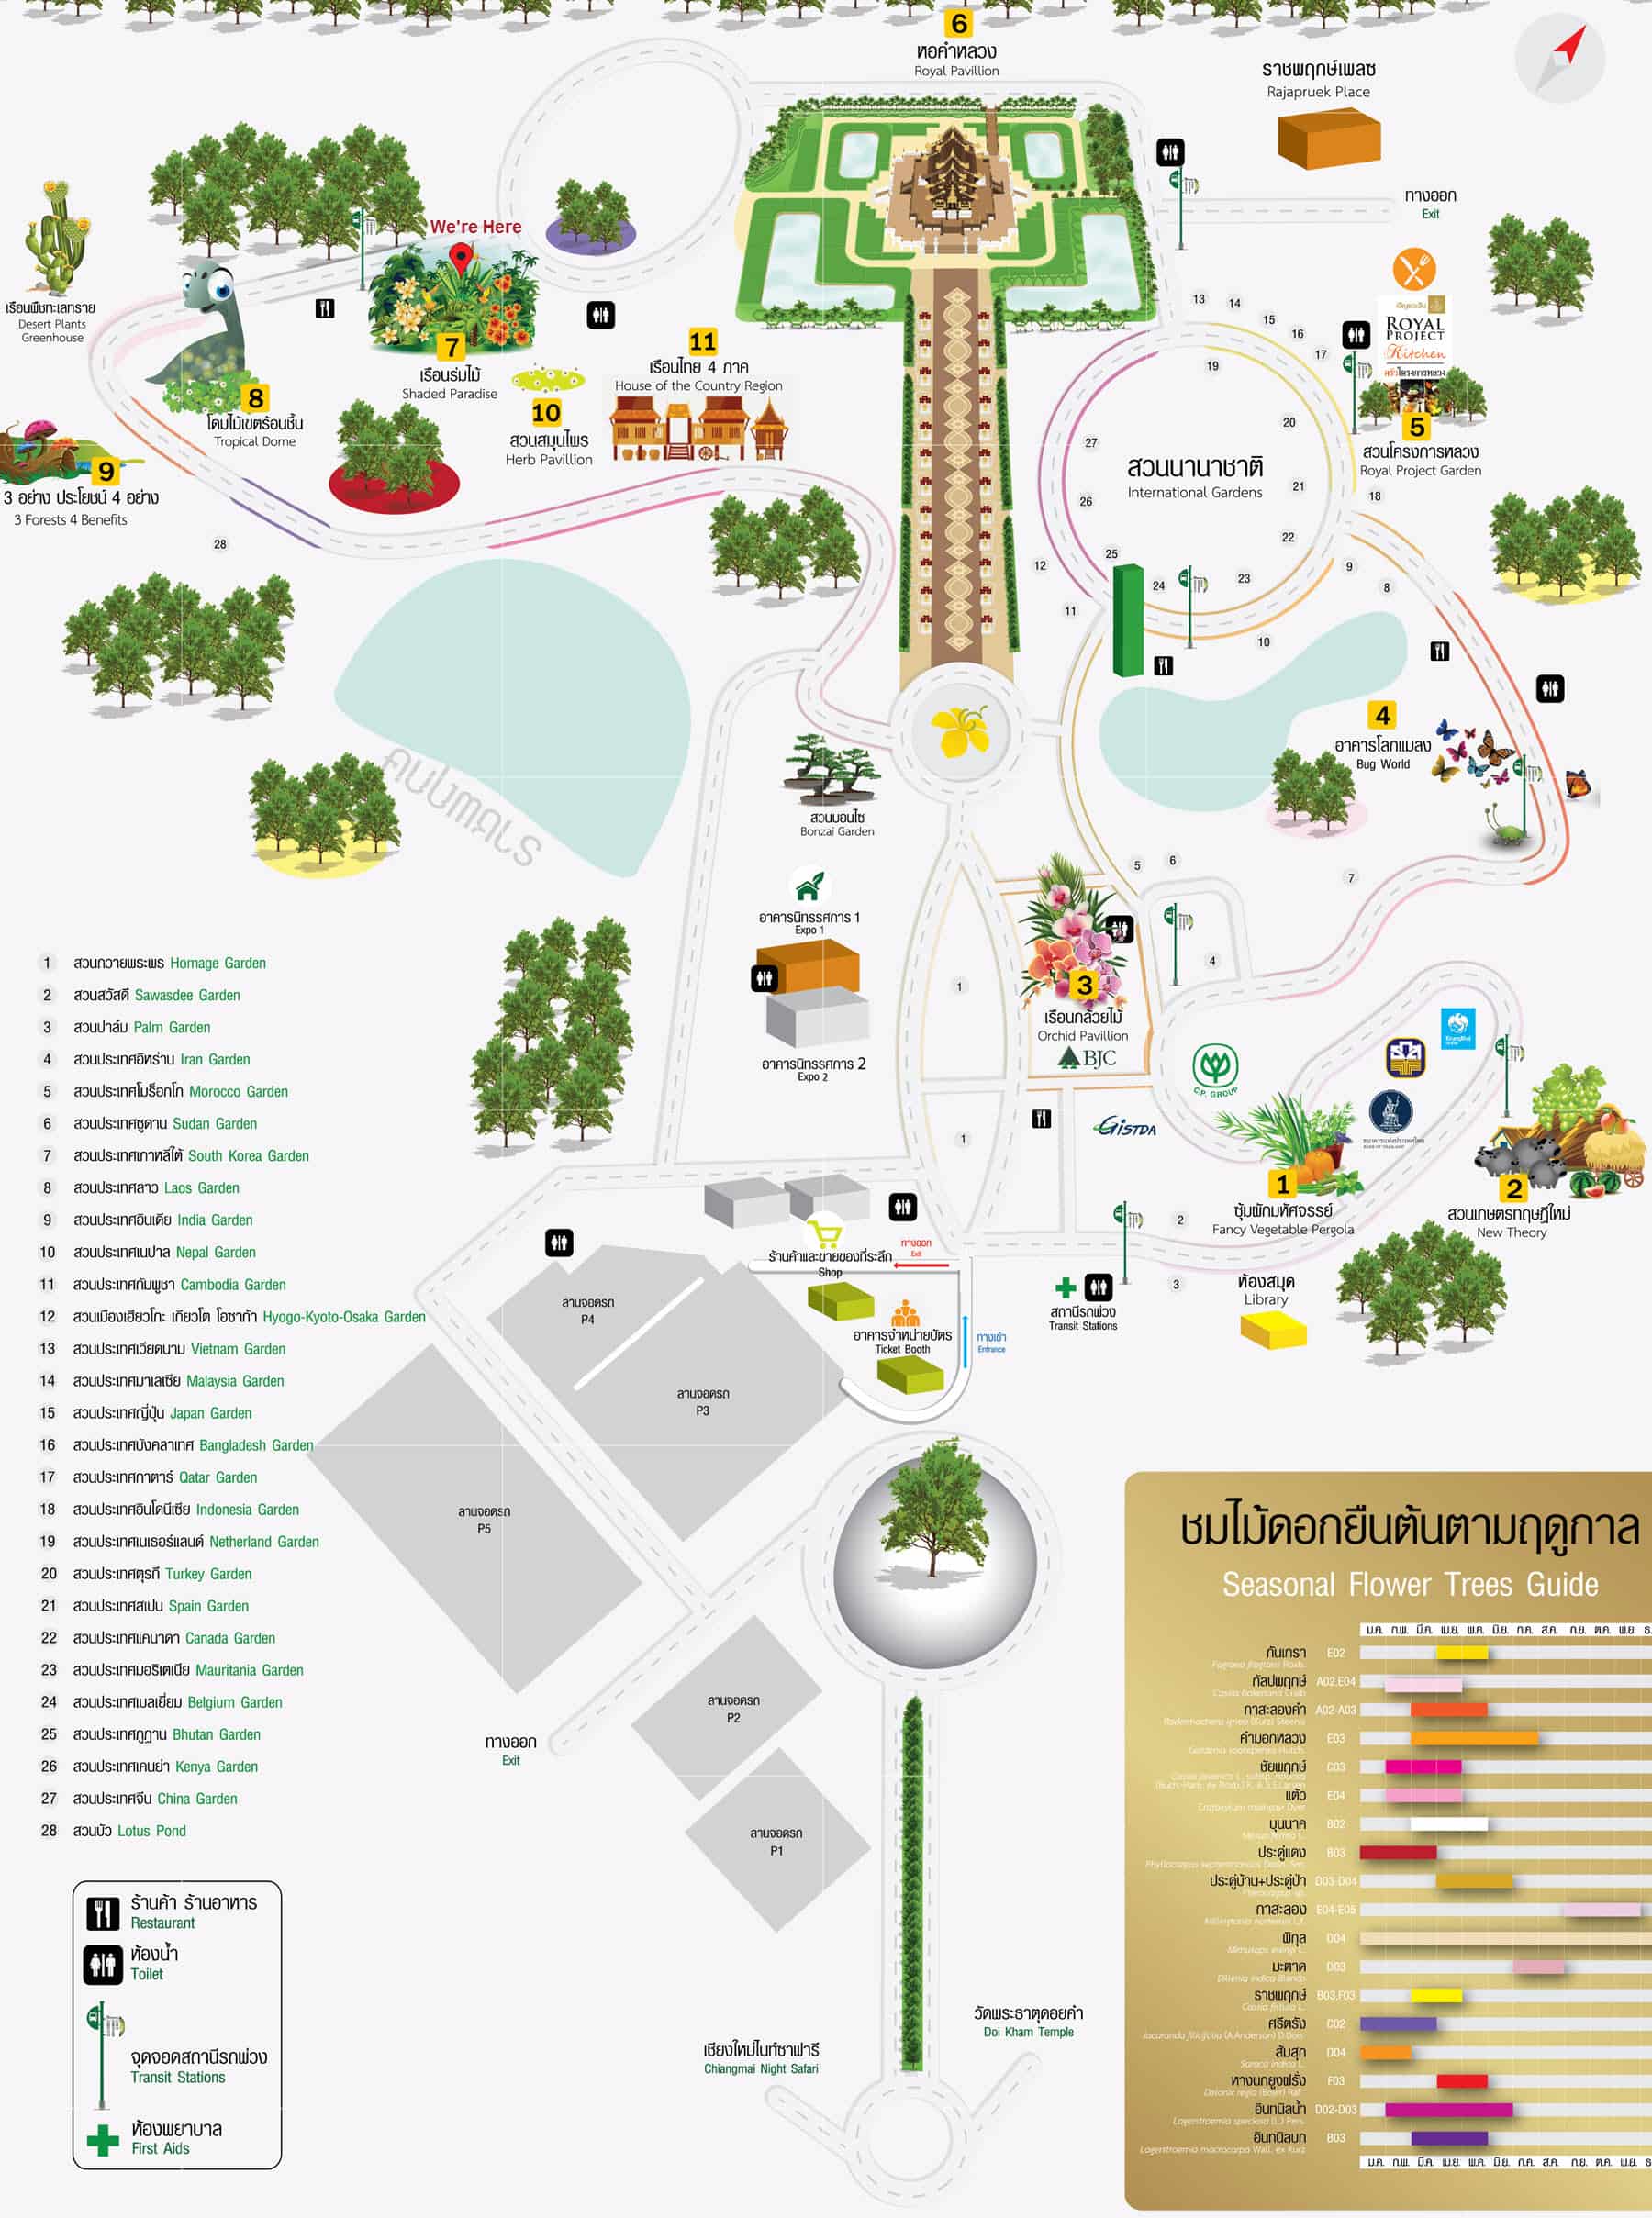 泰國清邁拉查帕皇家花園(Royal Park Rajapruek) 國際花園遊園地圖